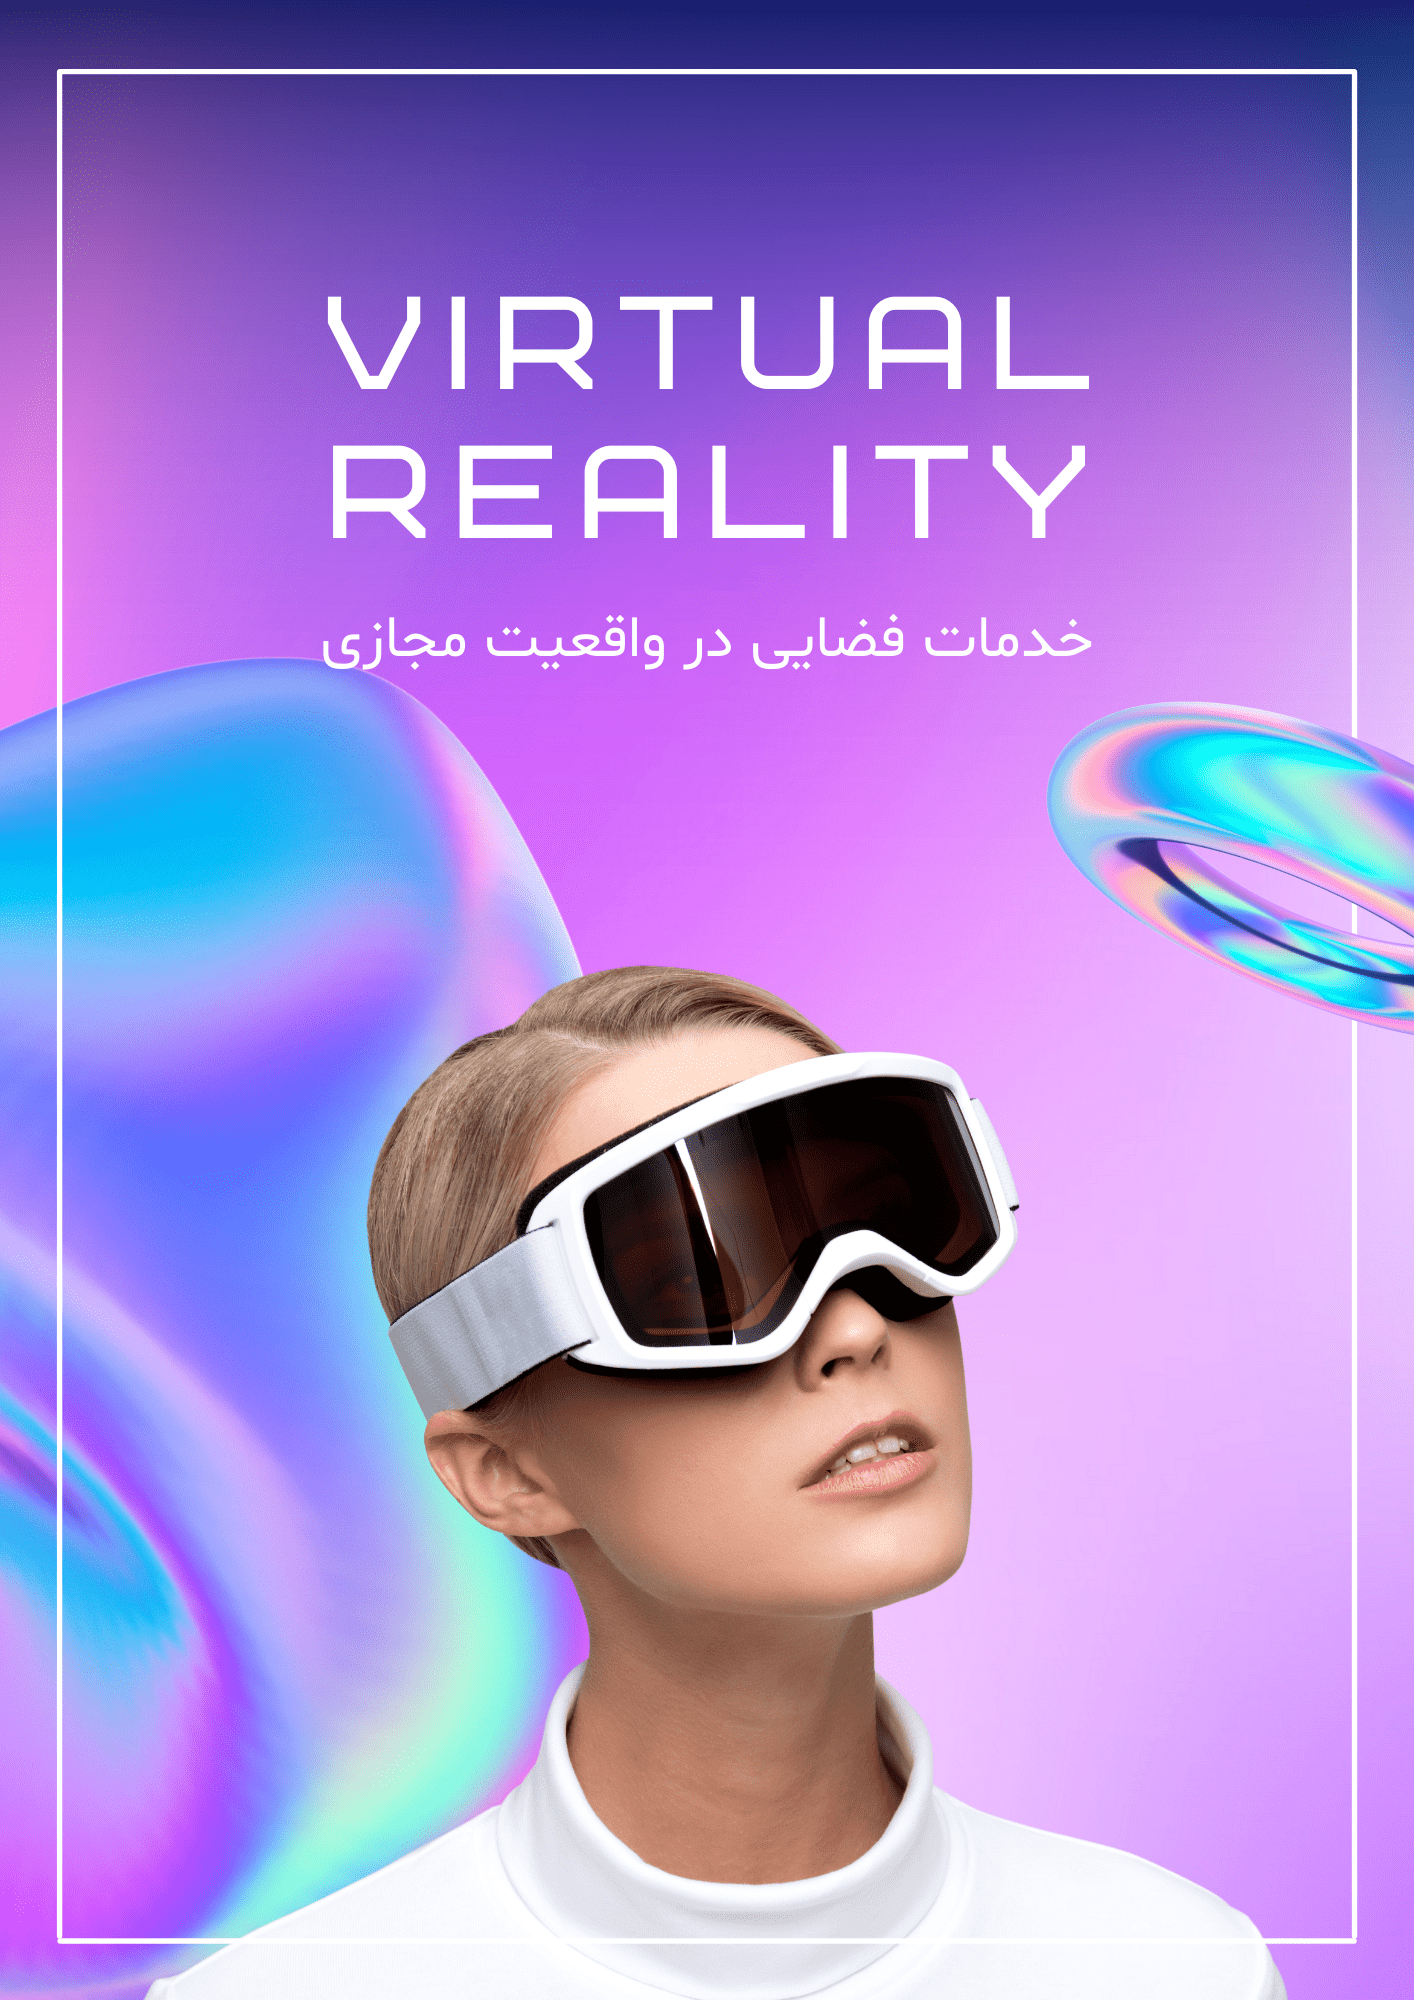 خدمات واقعیت مجازی